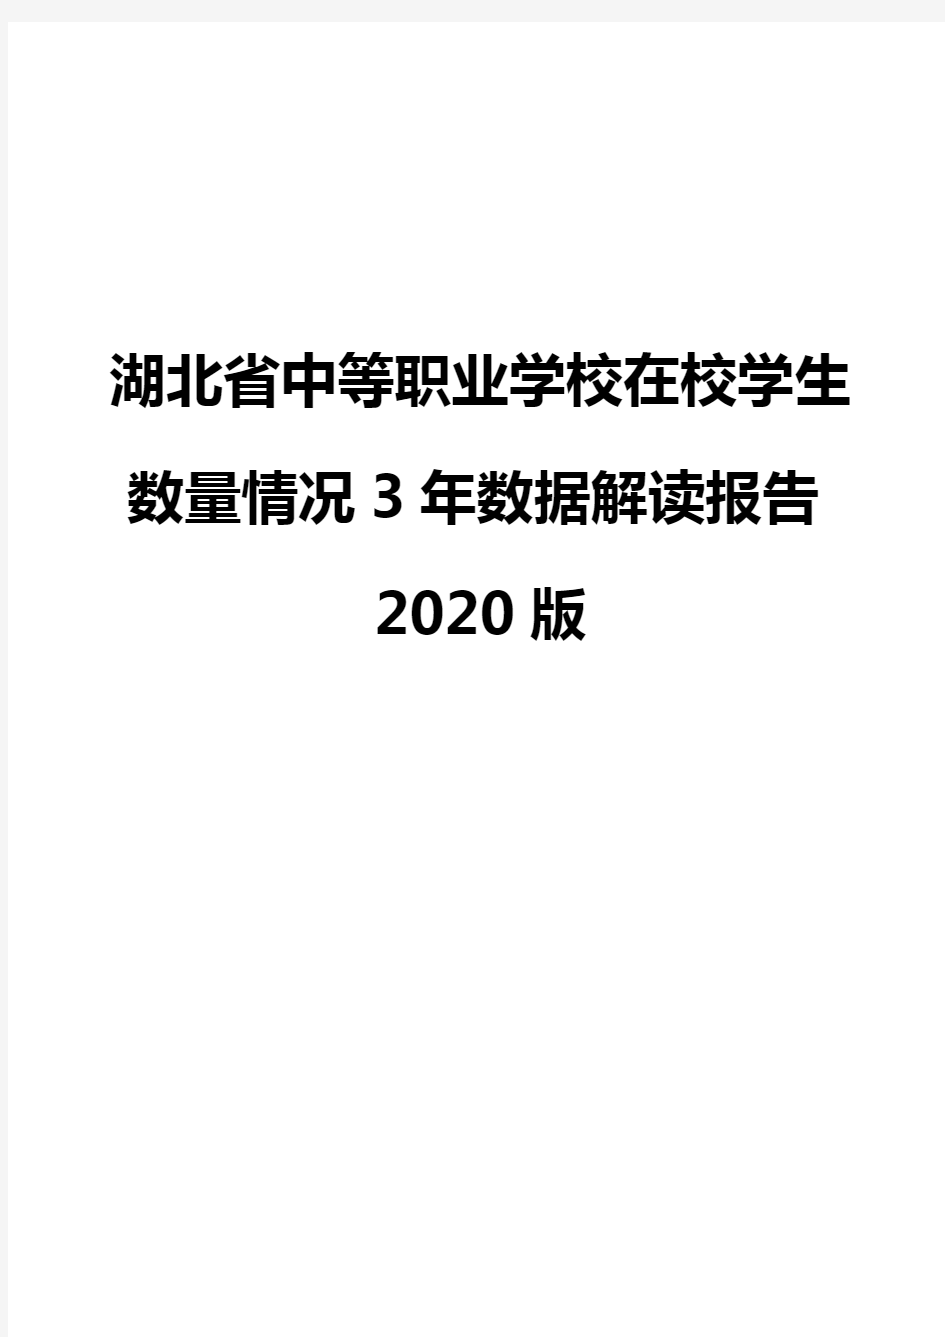 湖北省中等职业学校在校学生数量情况3年数据解读报告2020版